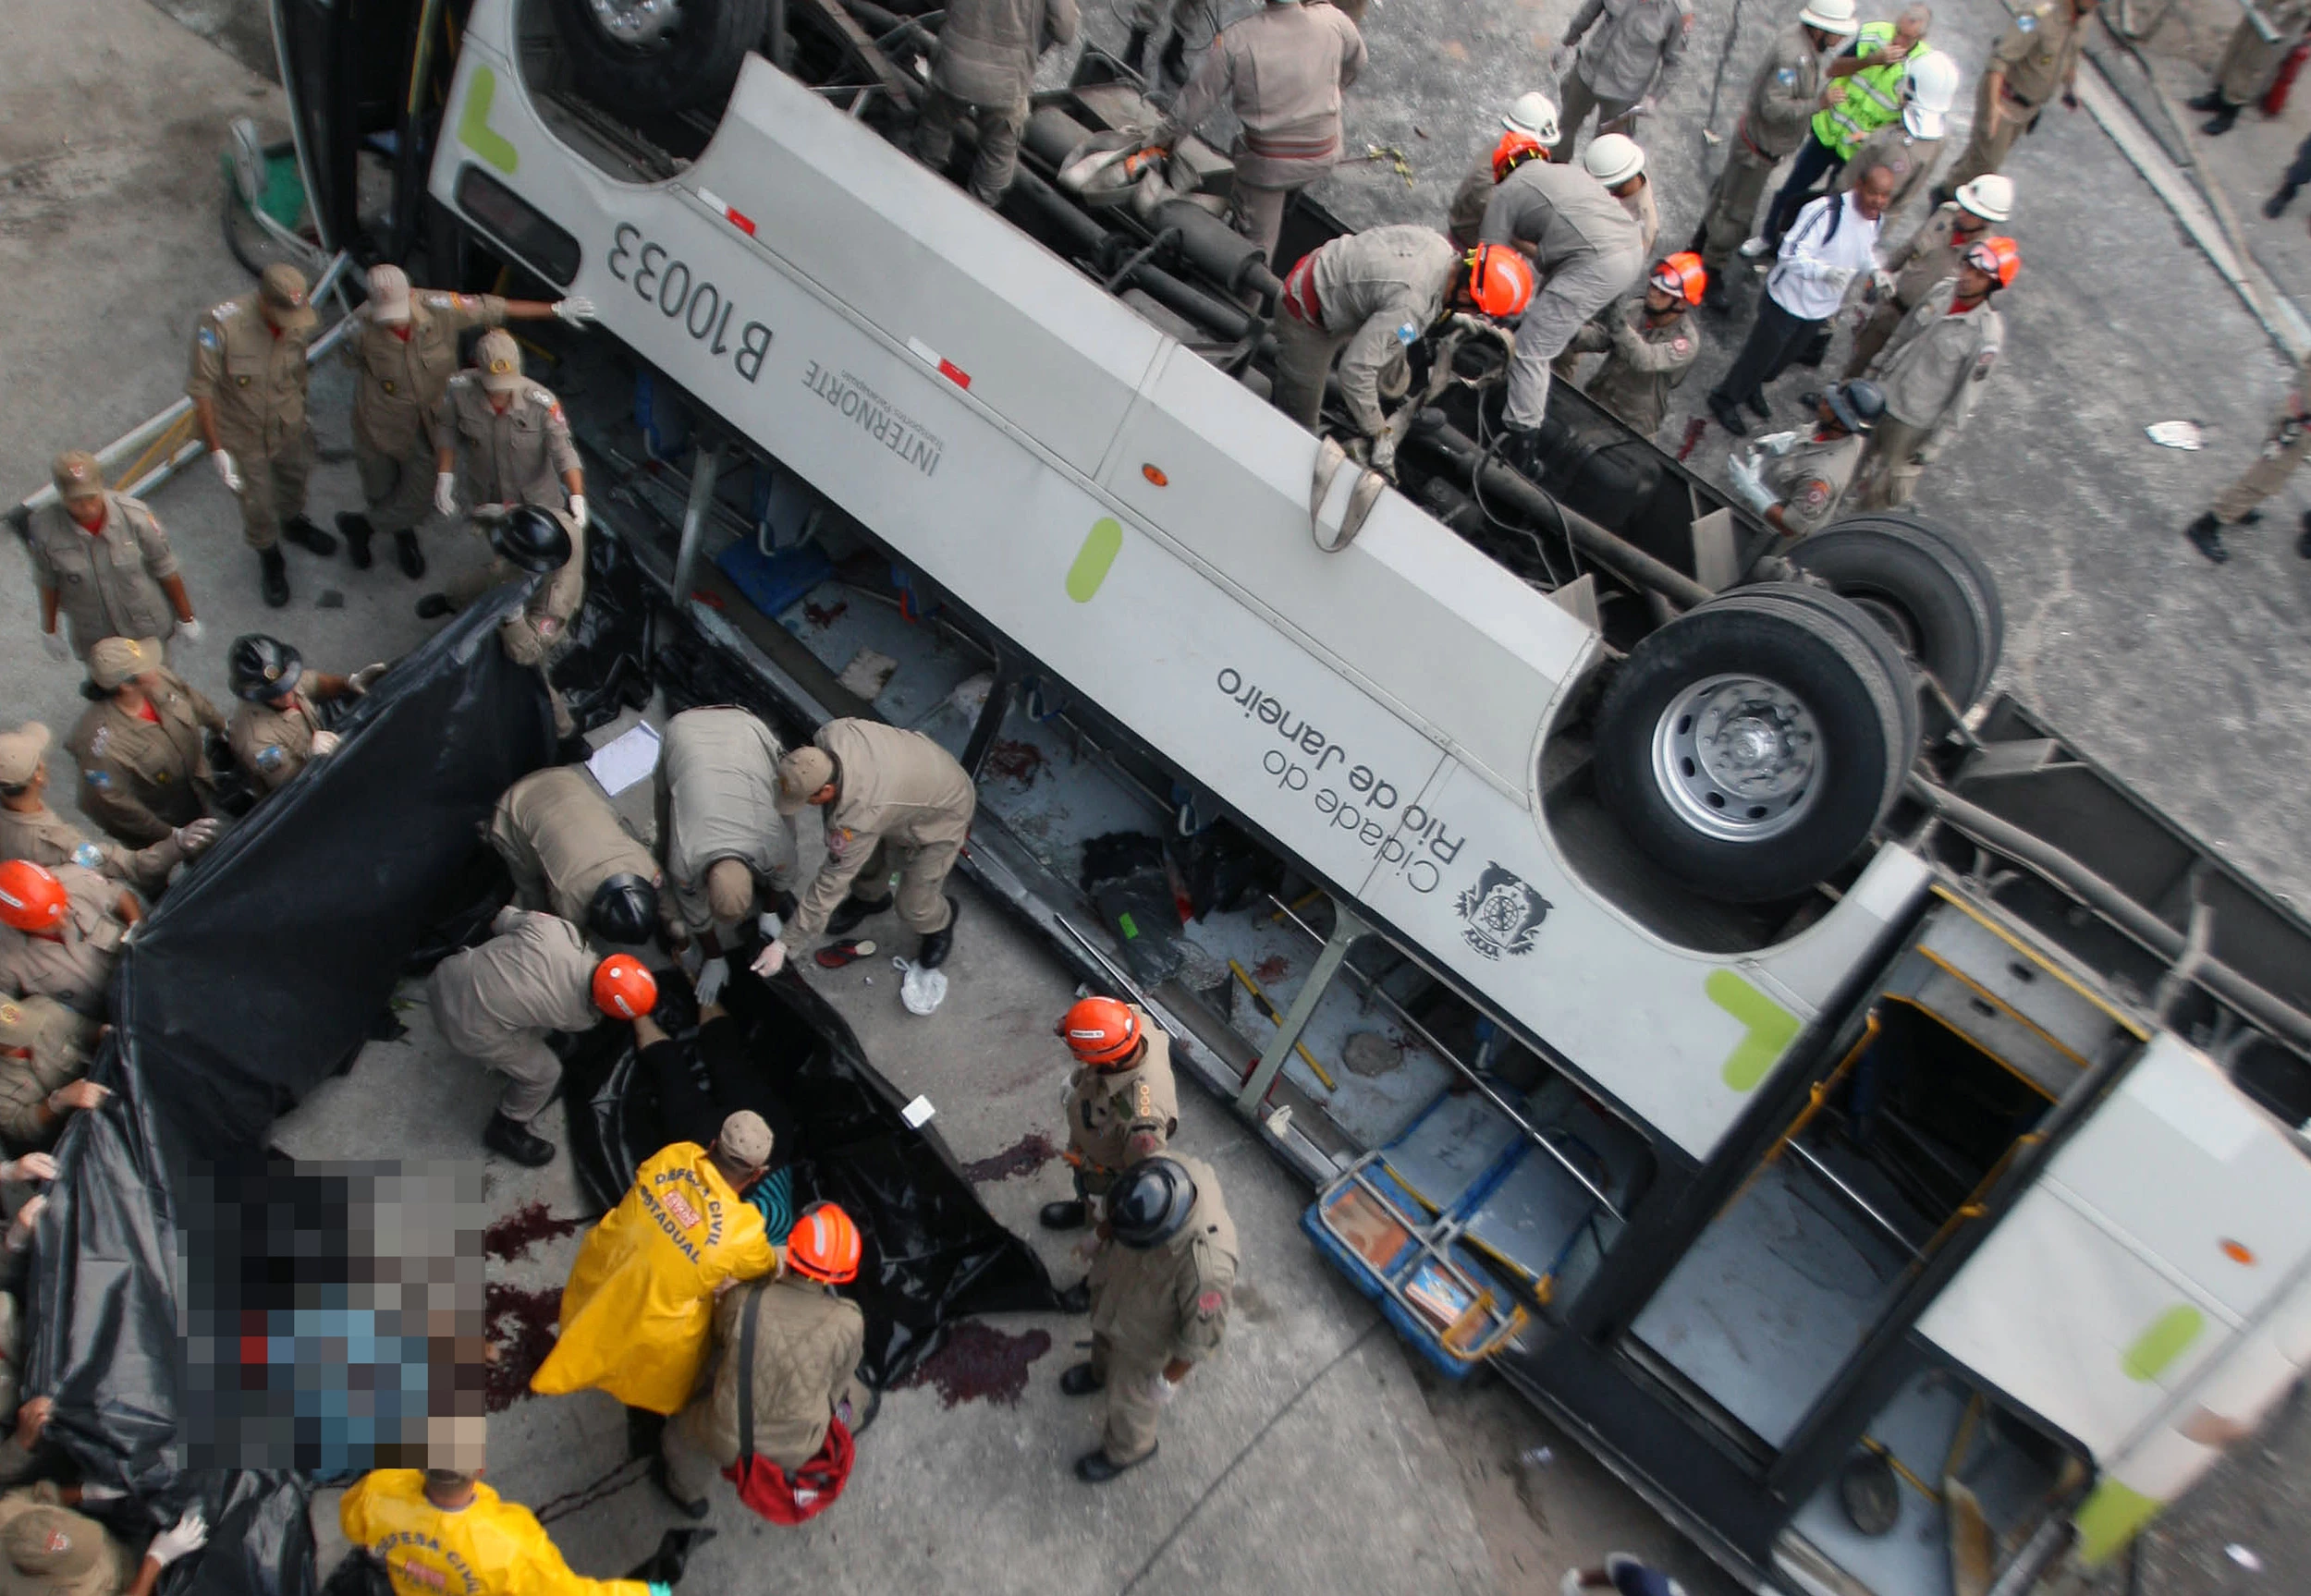 Bombeiros cariocas resgatam vítimas de acidente de trânsito. Em 2013, um ônibus caiu de uma ponte de 15 metros.